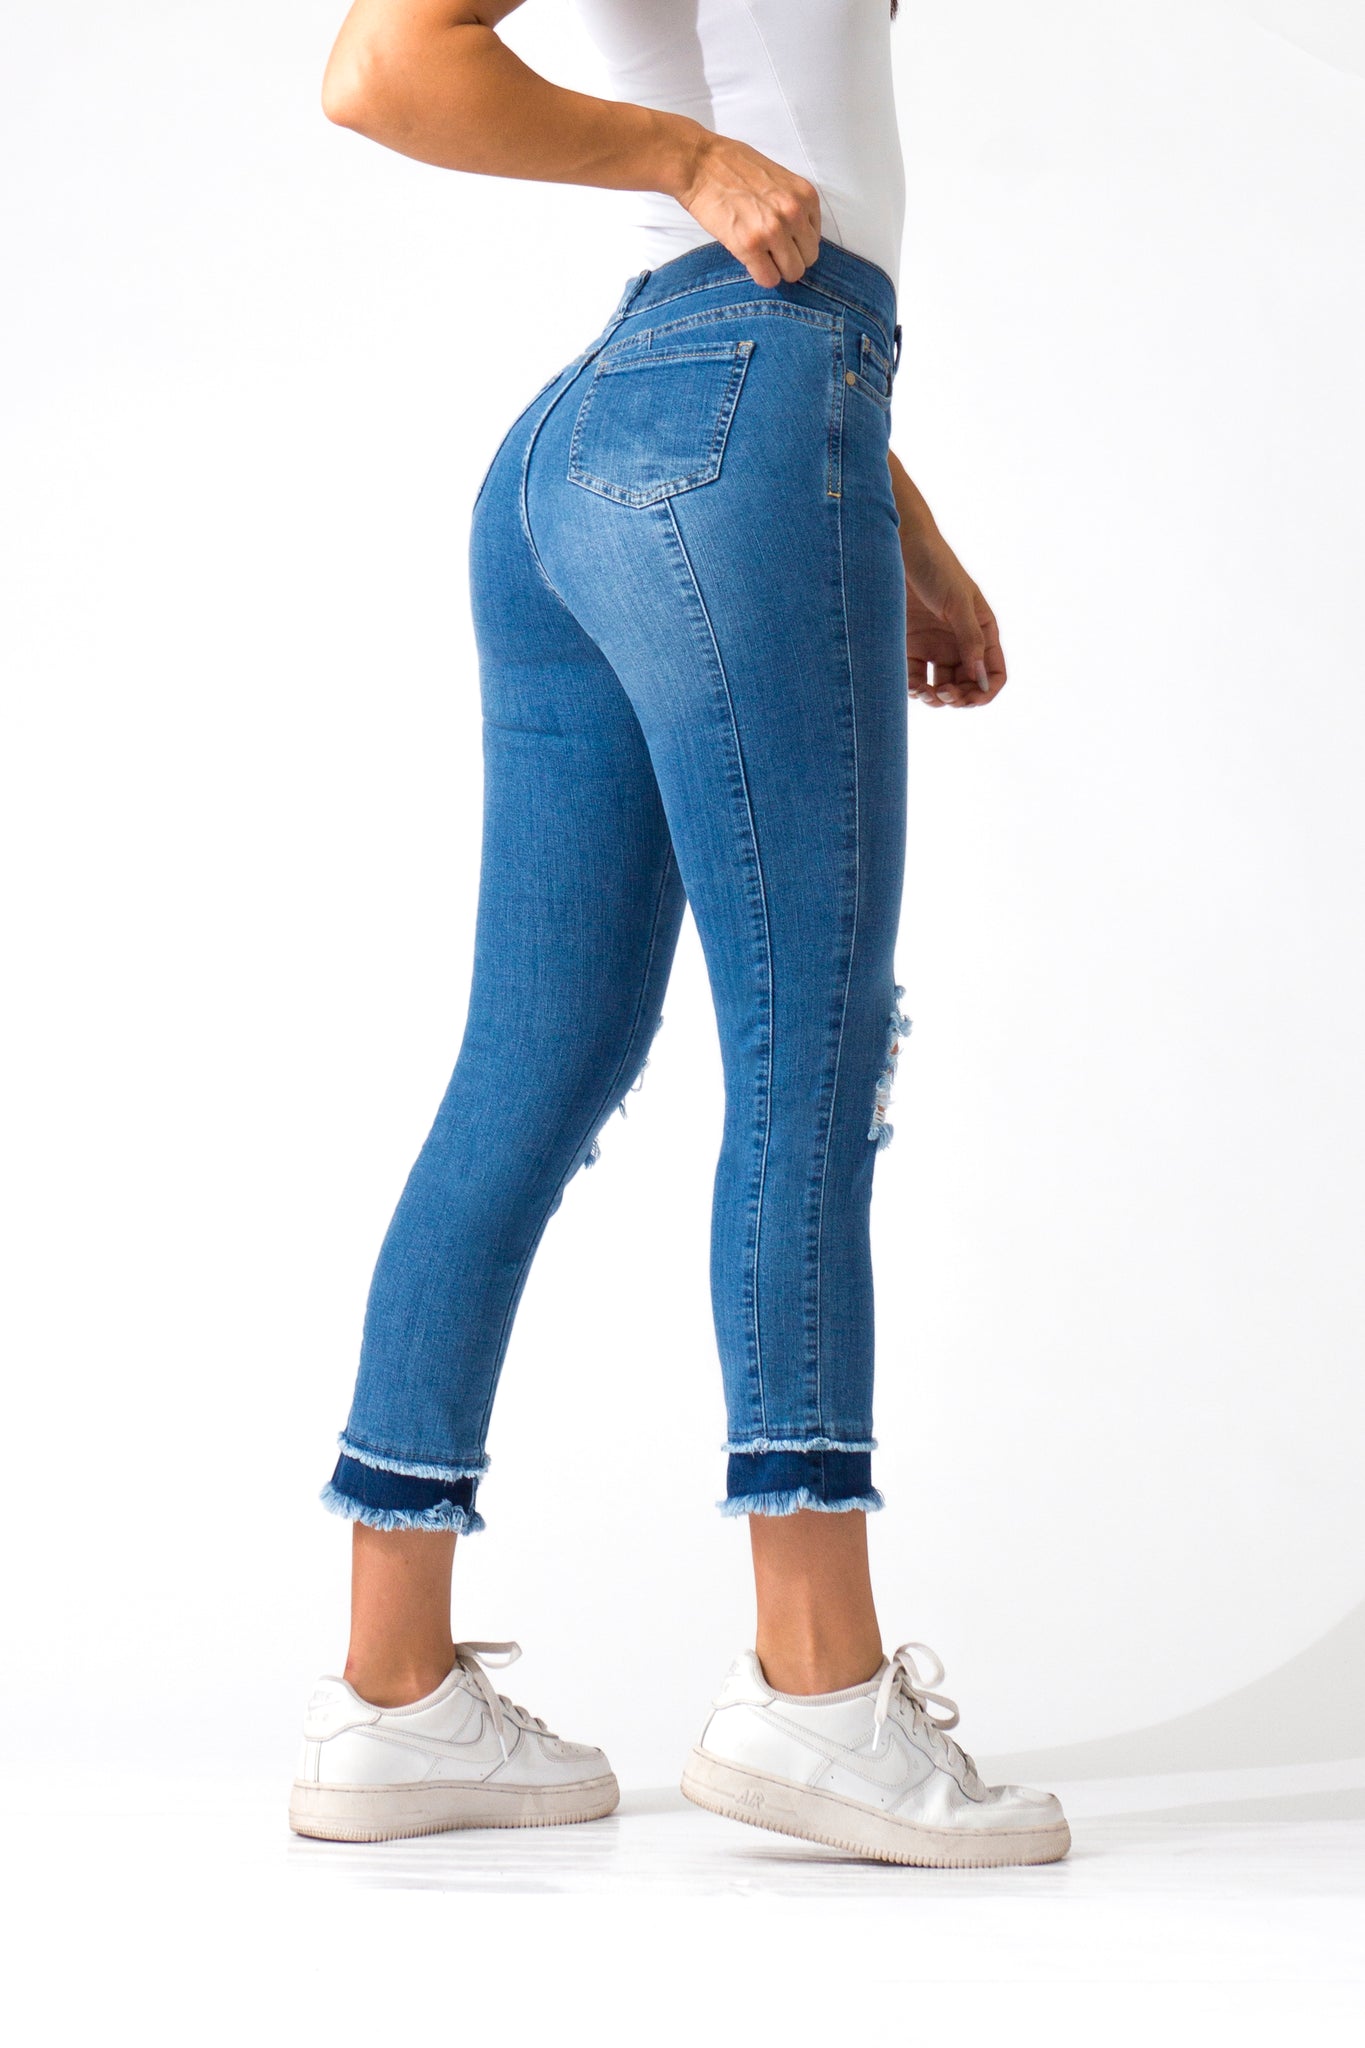 OHPOMP!® Cintura Media Skinny Jeans Ankle D1509